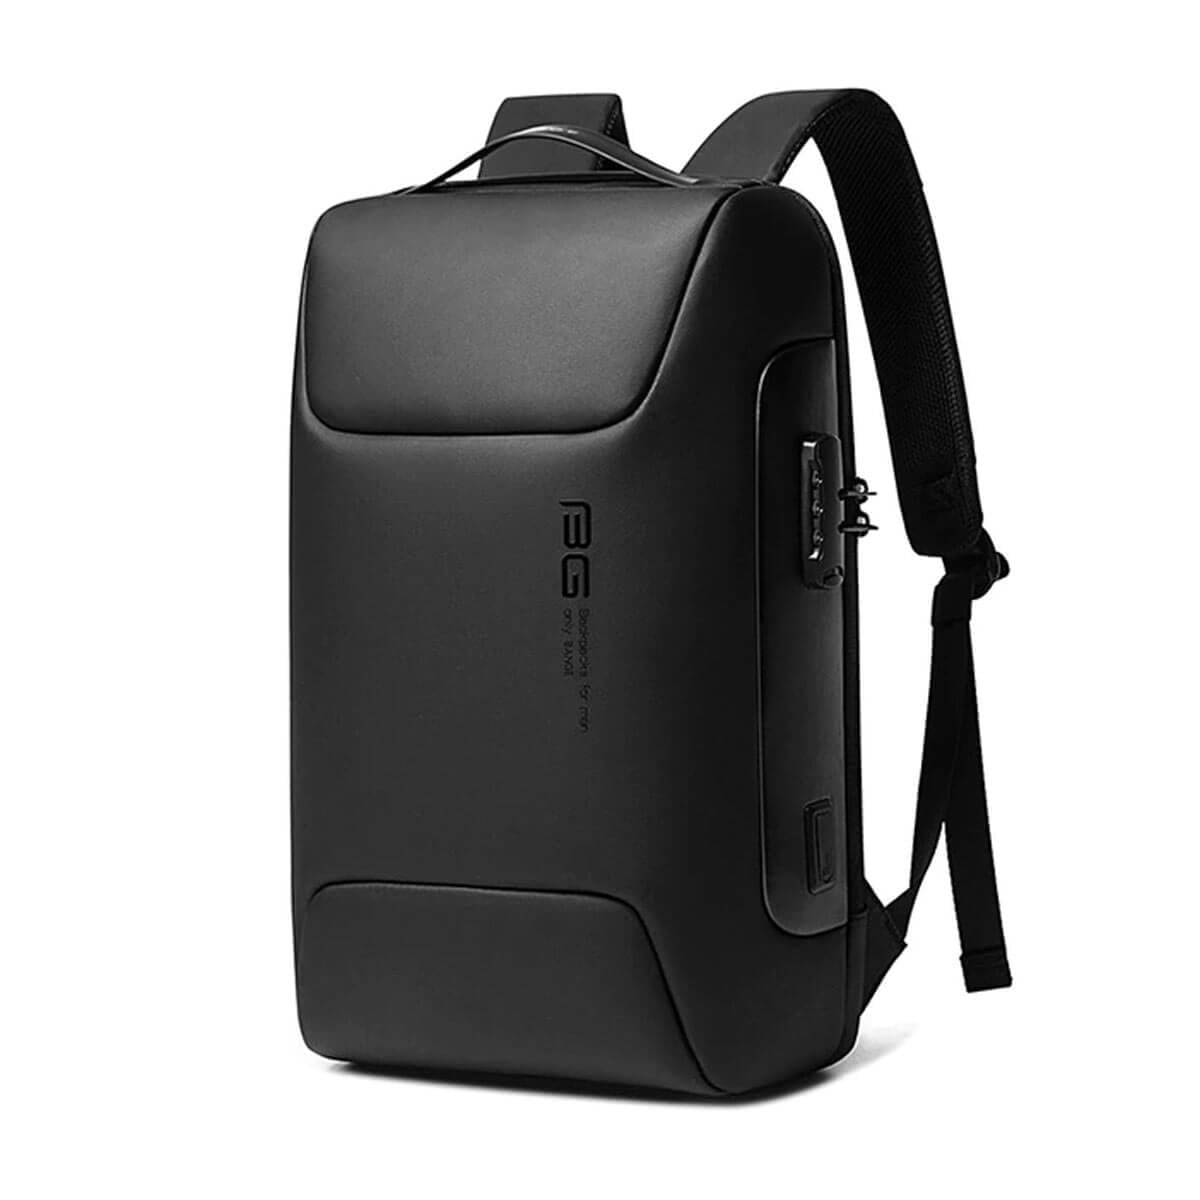 Black Waterproof Business Backpack with Lock